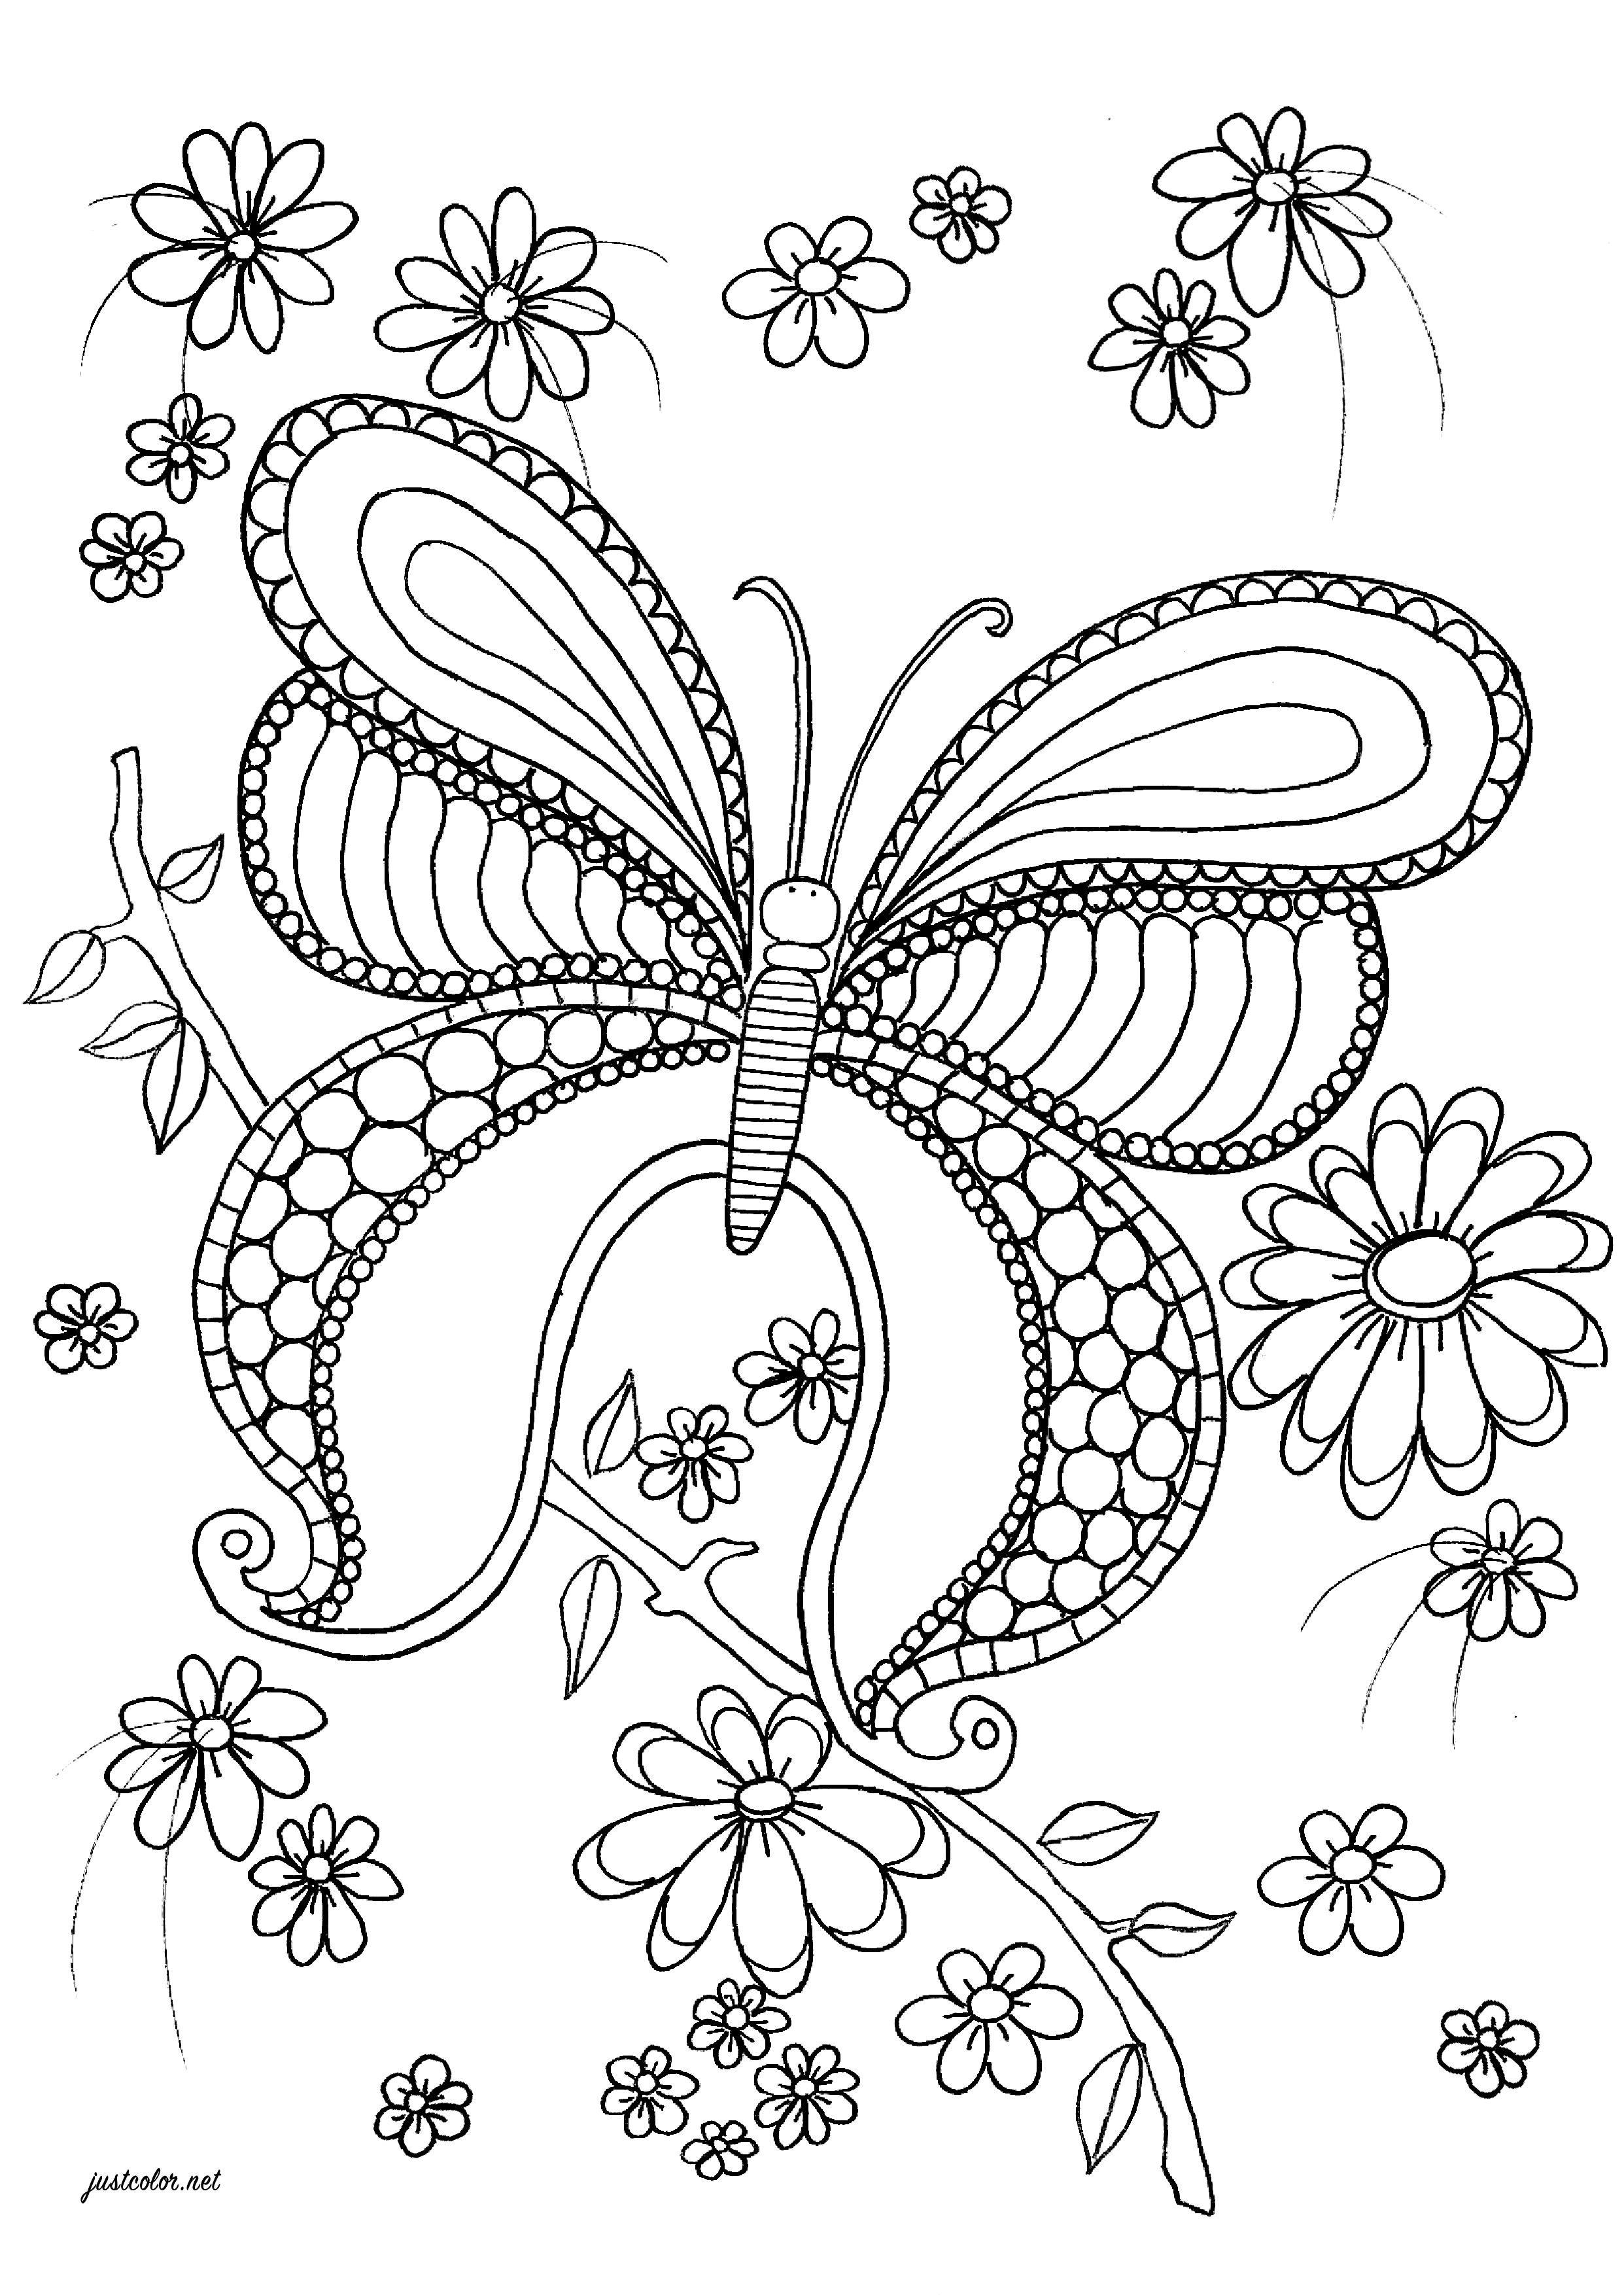 Joli papillon avec de beaux motifs à colorier, et de magnifique fleurs l'entourant, Artiste : Marie-Claude Fontaine